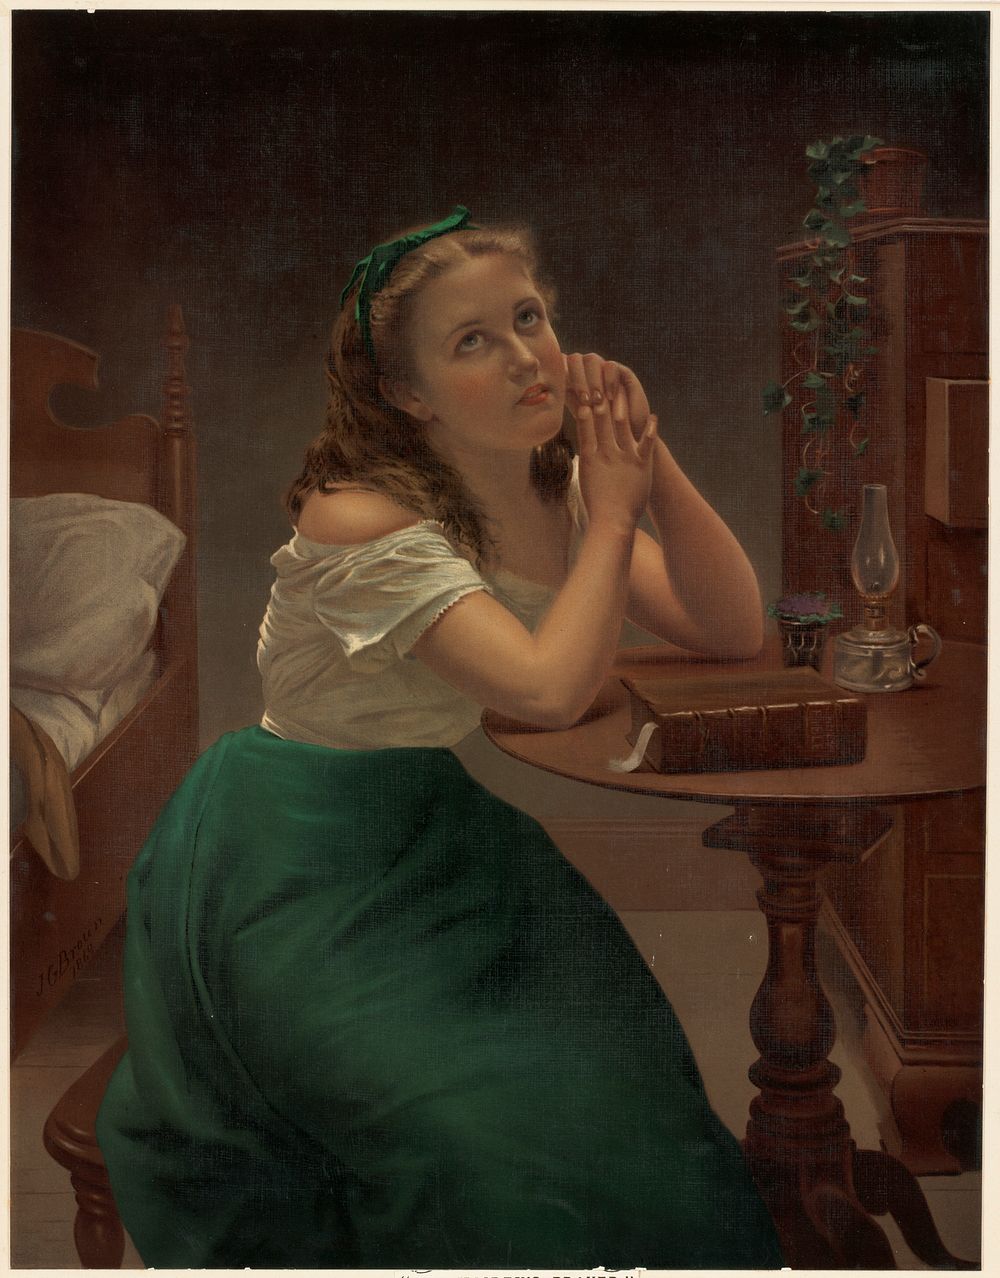             The maiden's prayer          